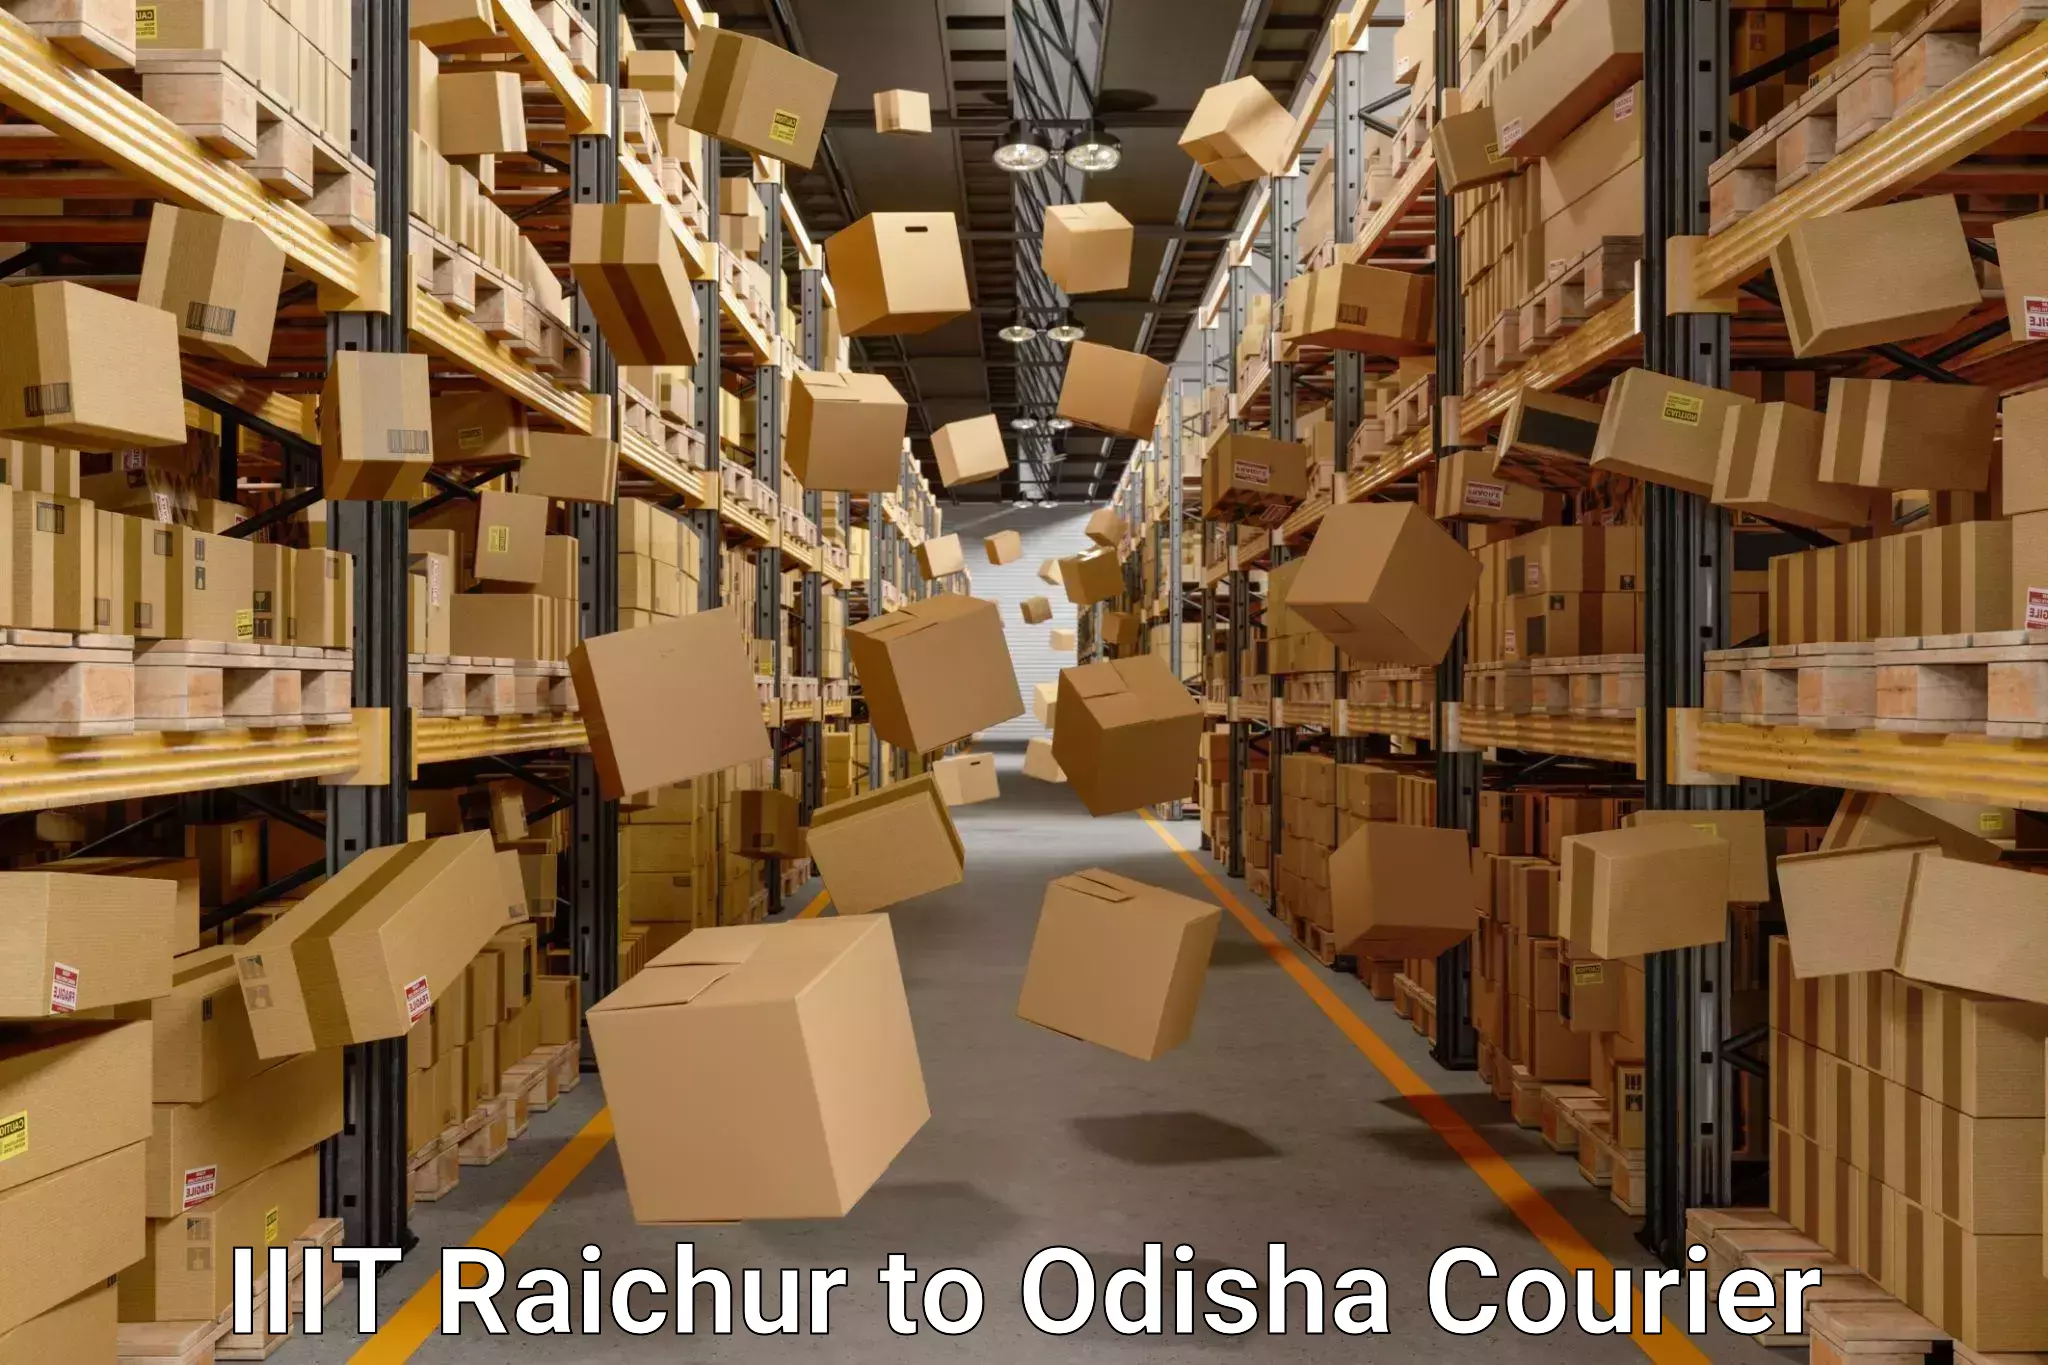 Furniture moving service IIIT Raichur to Sambalpur